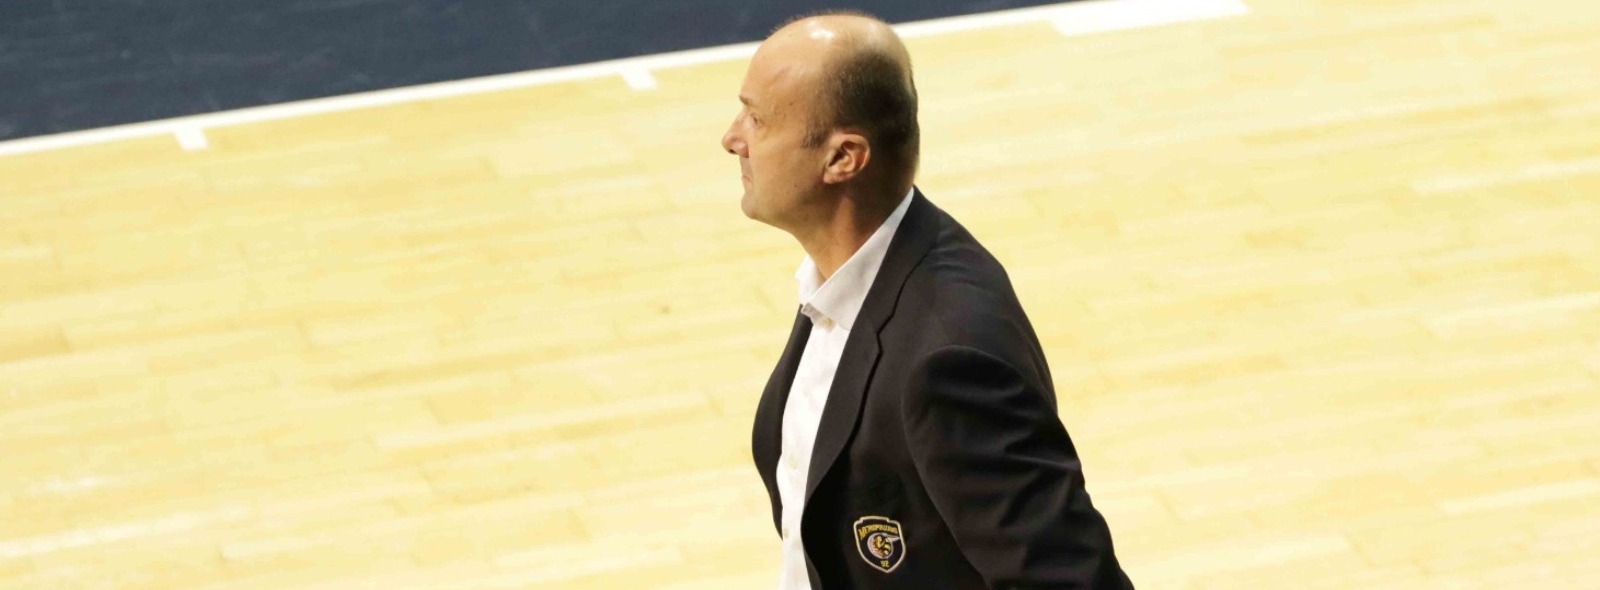 Communiqué - Jurij Zdovc ne sera plus l’entraîneur des Metropolitans 